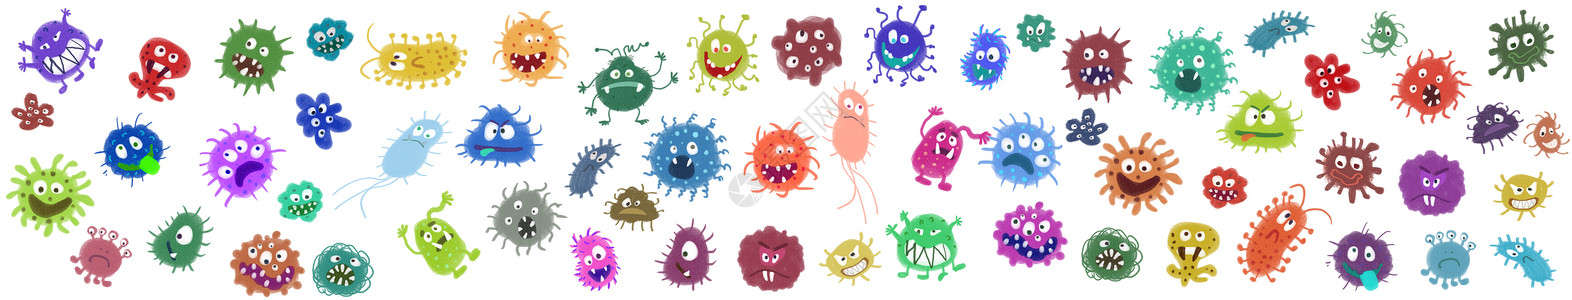 多重防护细菌病毒元素插画